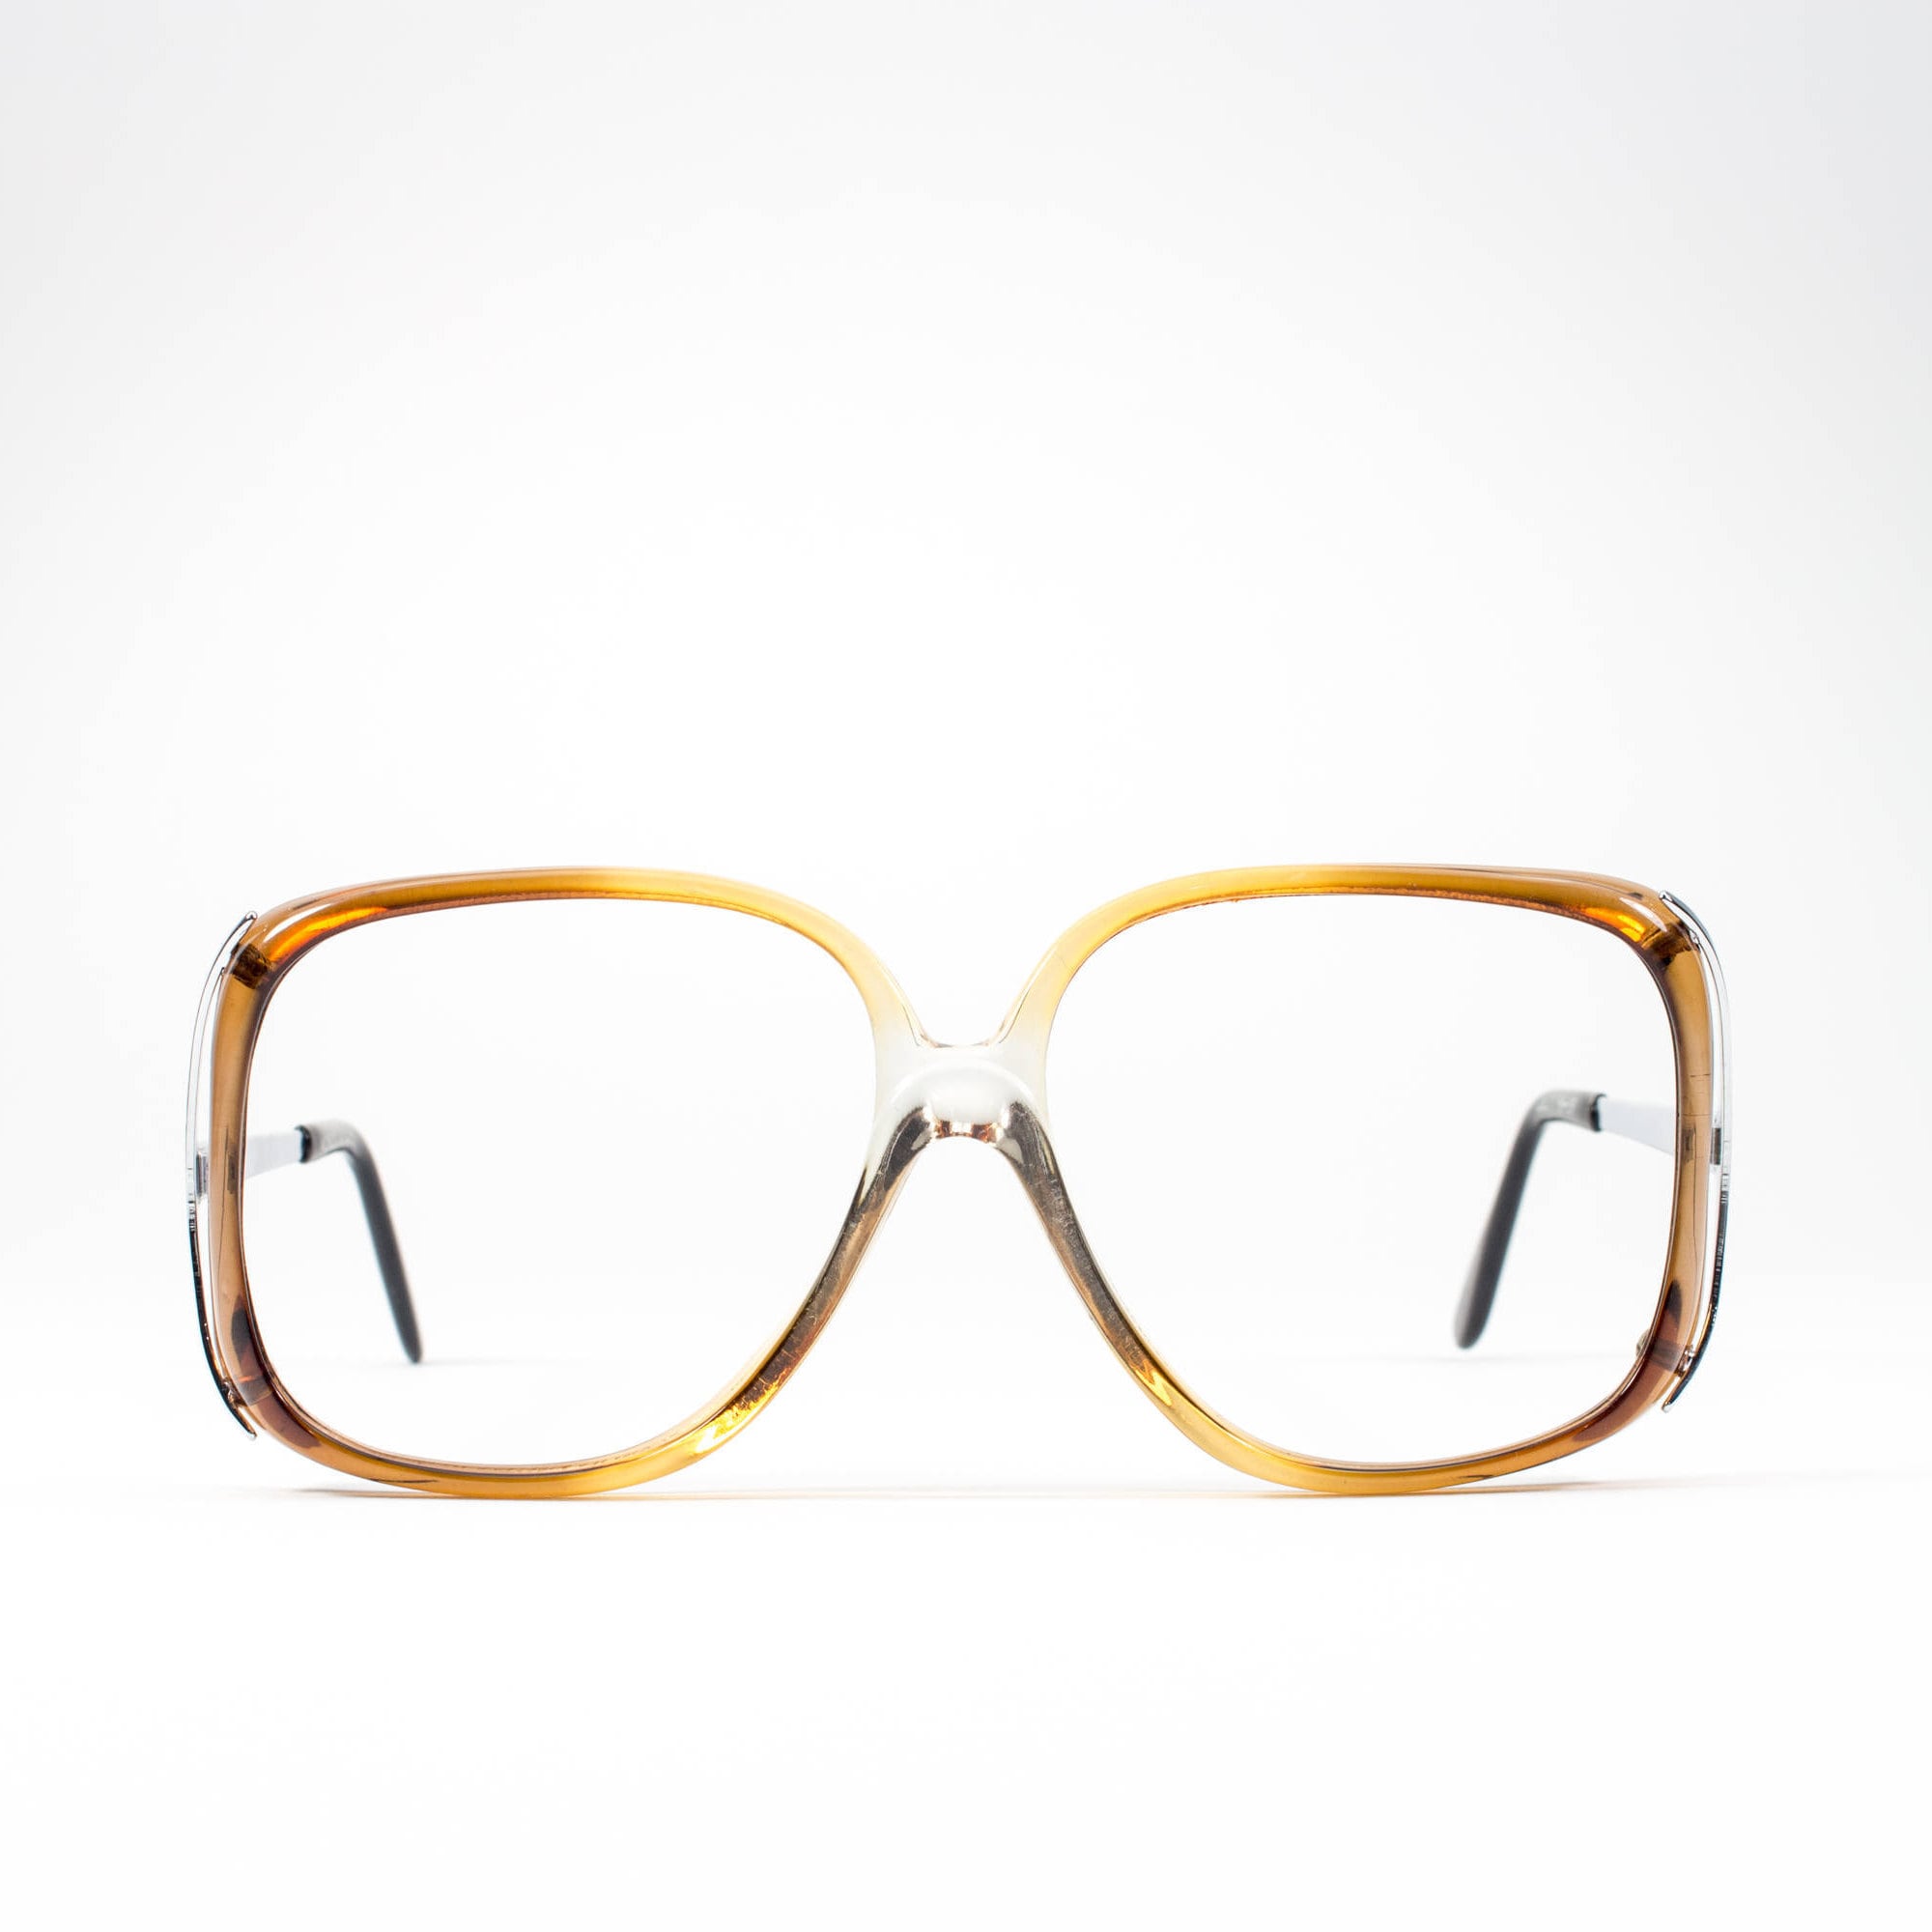 70s Glasses Vintage Eyeglasses 1970s Oversized Glasses Frames